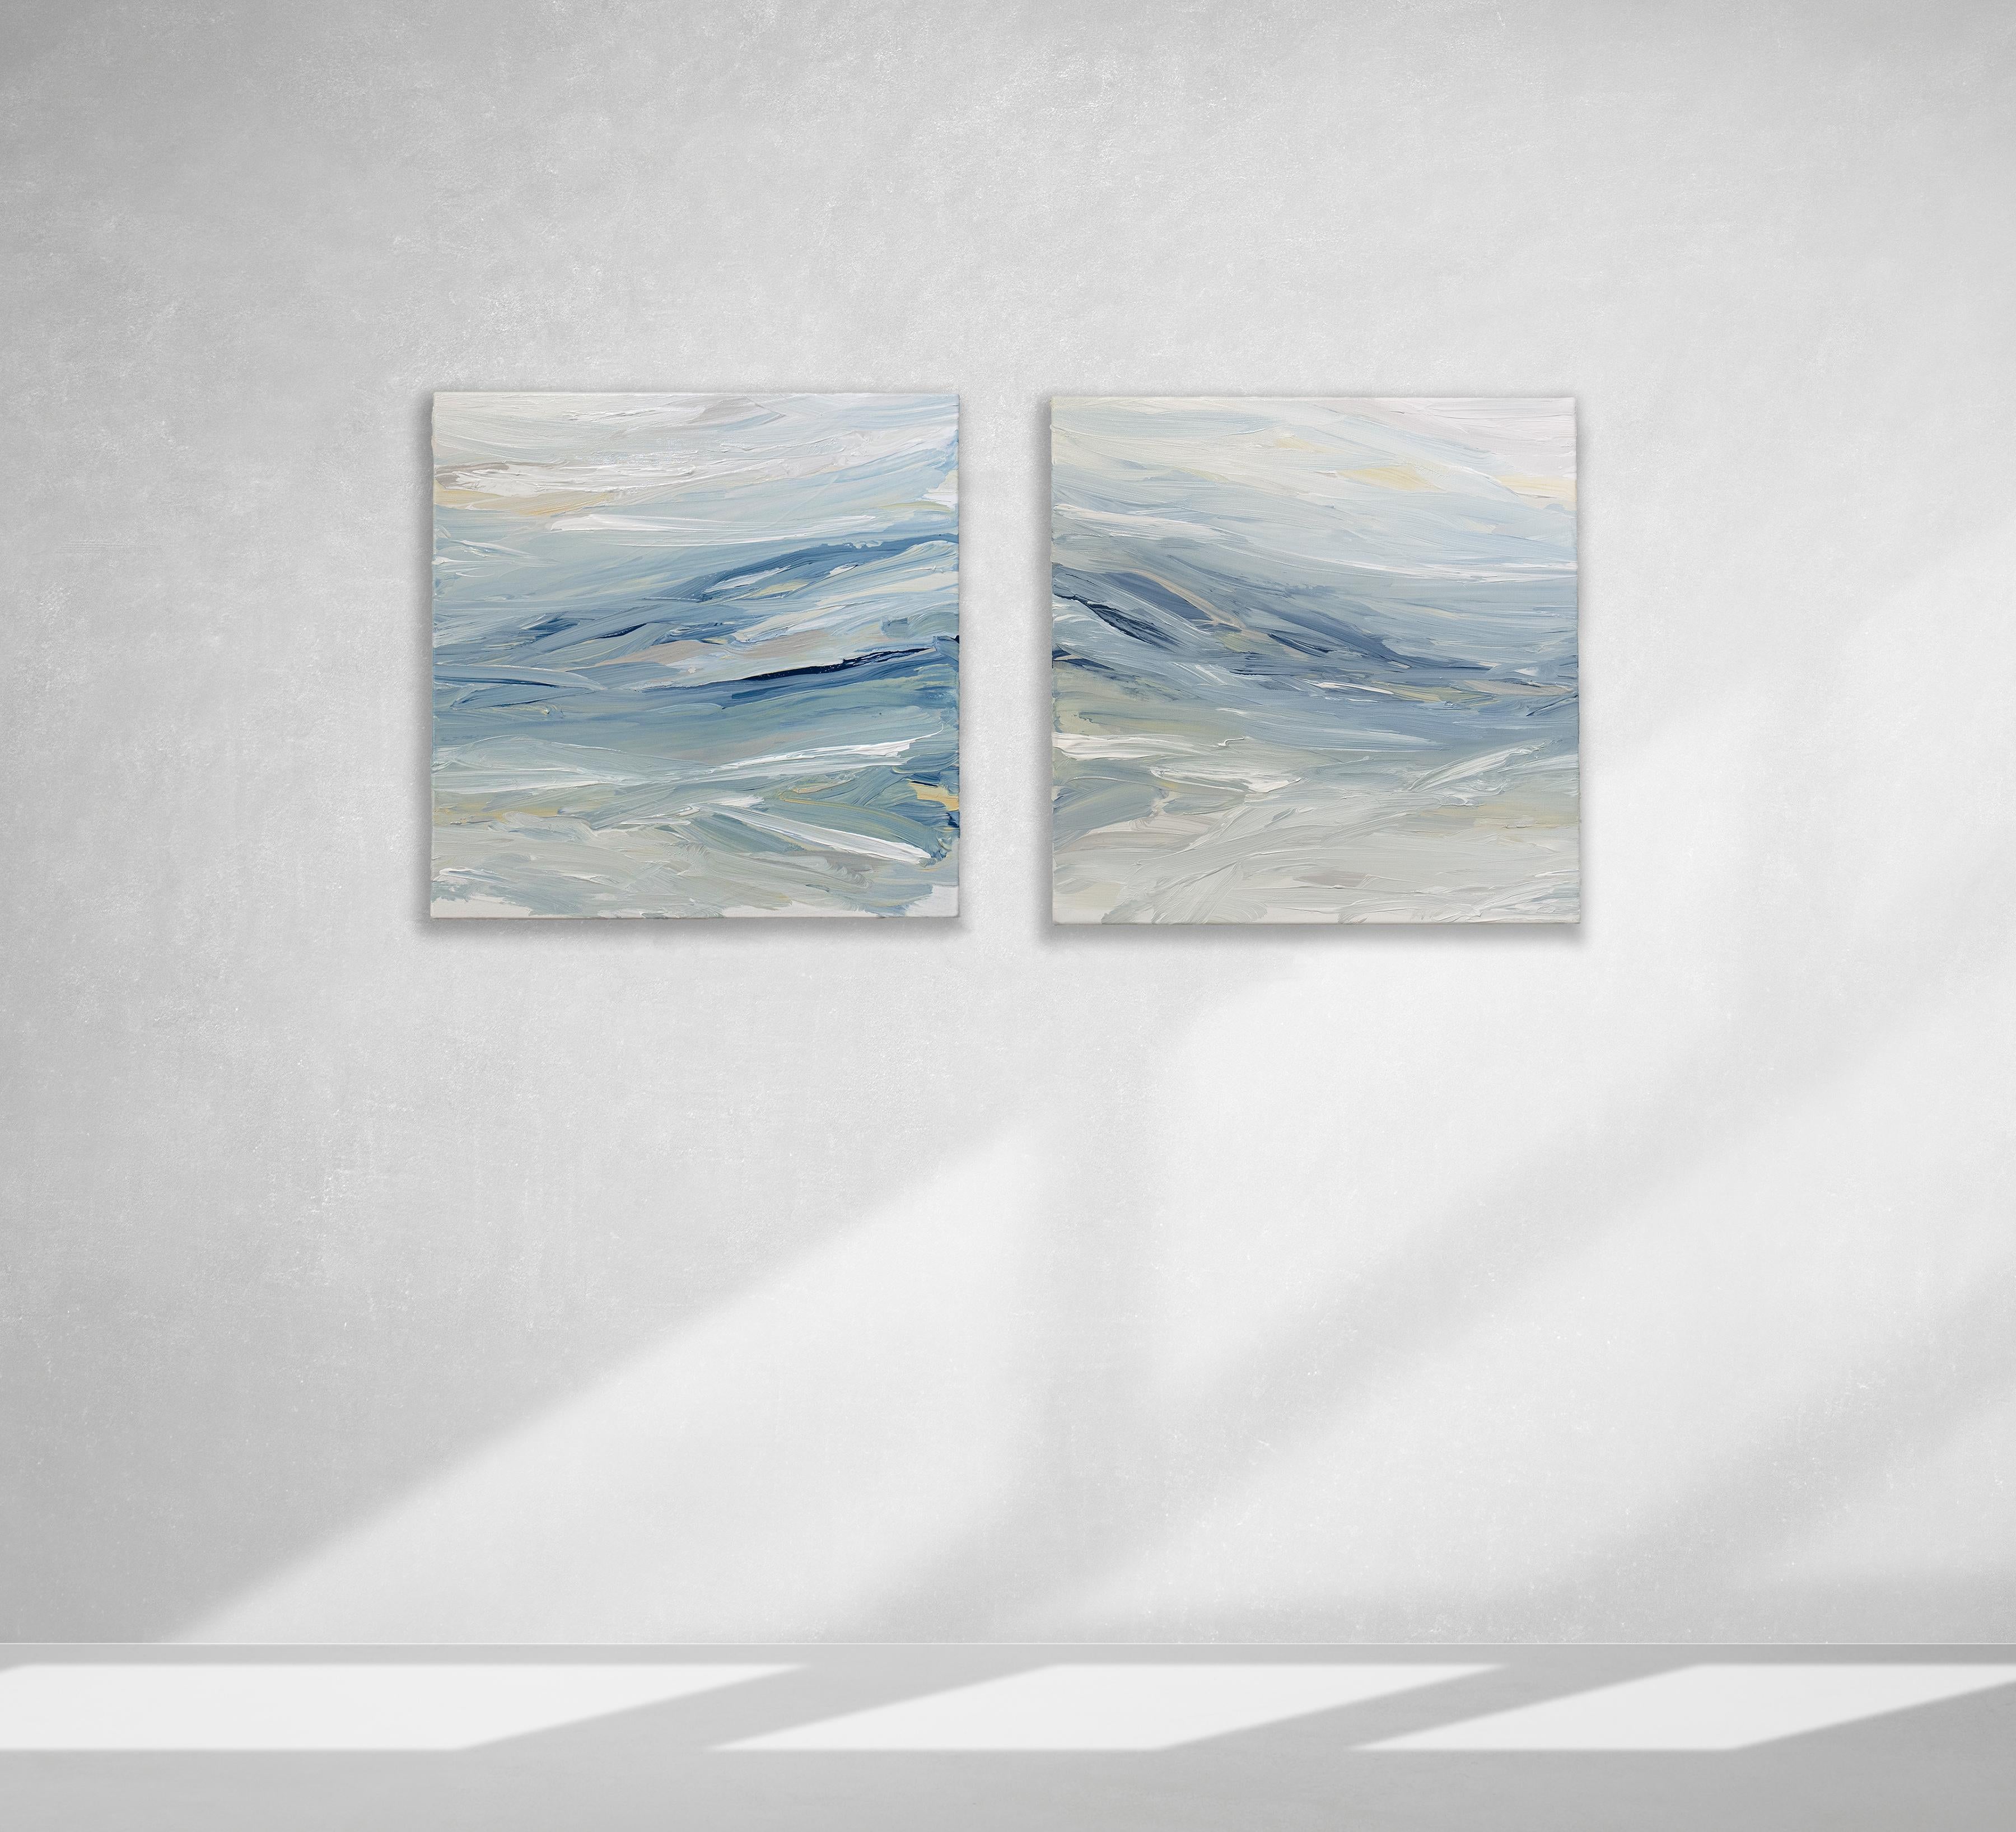 Ce diptyque abstrait de Teodora Guererra présente une légère palette côtière de bleu, de blanc et de beige sable. L'artiste applique des touches de peinture à l'aide d'un couteau à palette sur la toile, créant ainsi un mouvement dans la composition